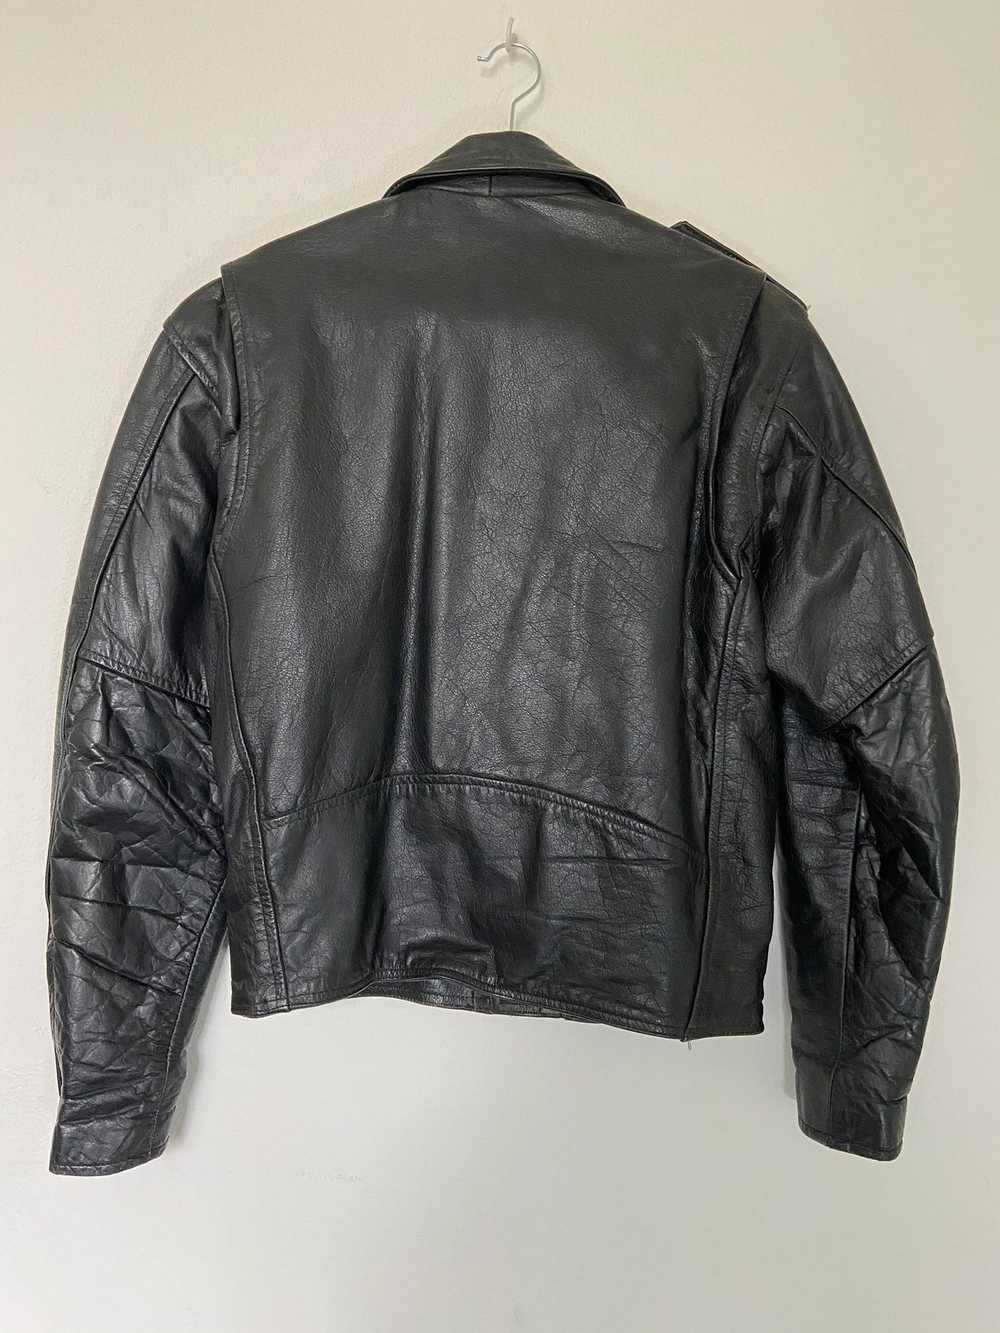 Leather Jacket × Rock Band × Vintage Vintage Leat… - image 5